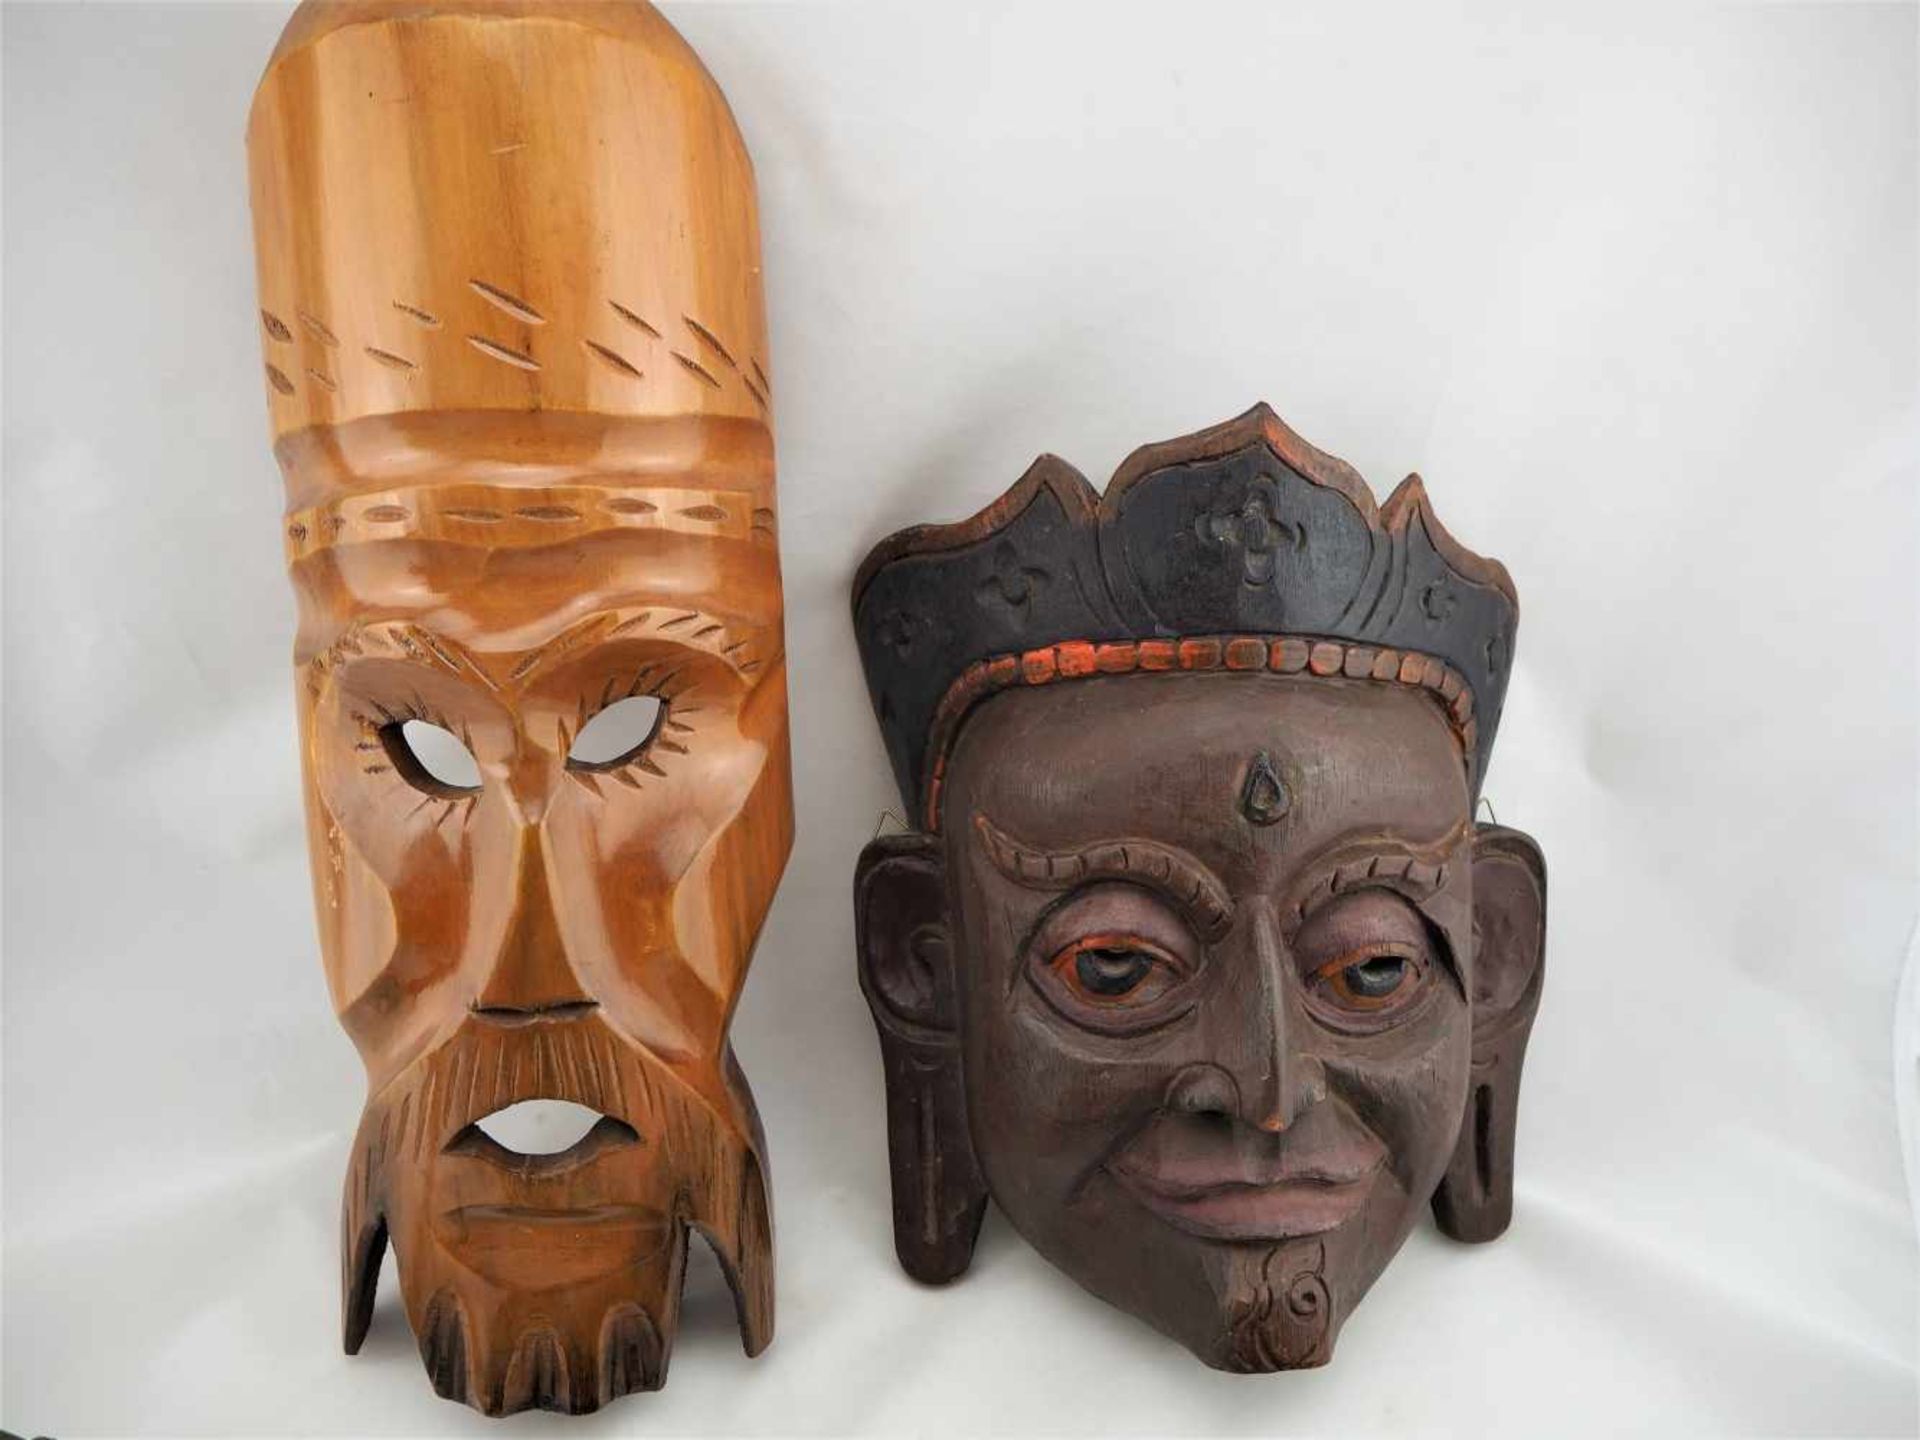 Konvolut7 Teile, 4 Masken aus Holz, Keramik Skulptur, Holzrassel. Neuzeitlich Kunstgewerblich. - Bild 2 aus 4